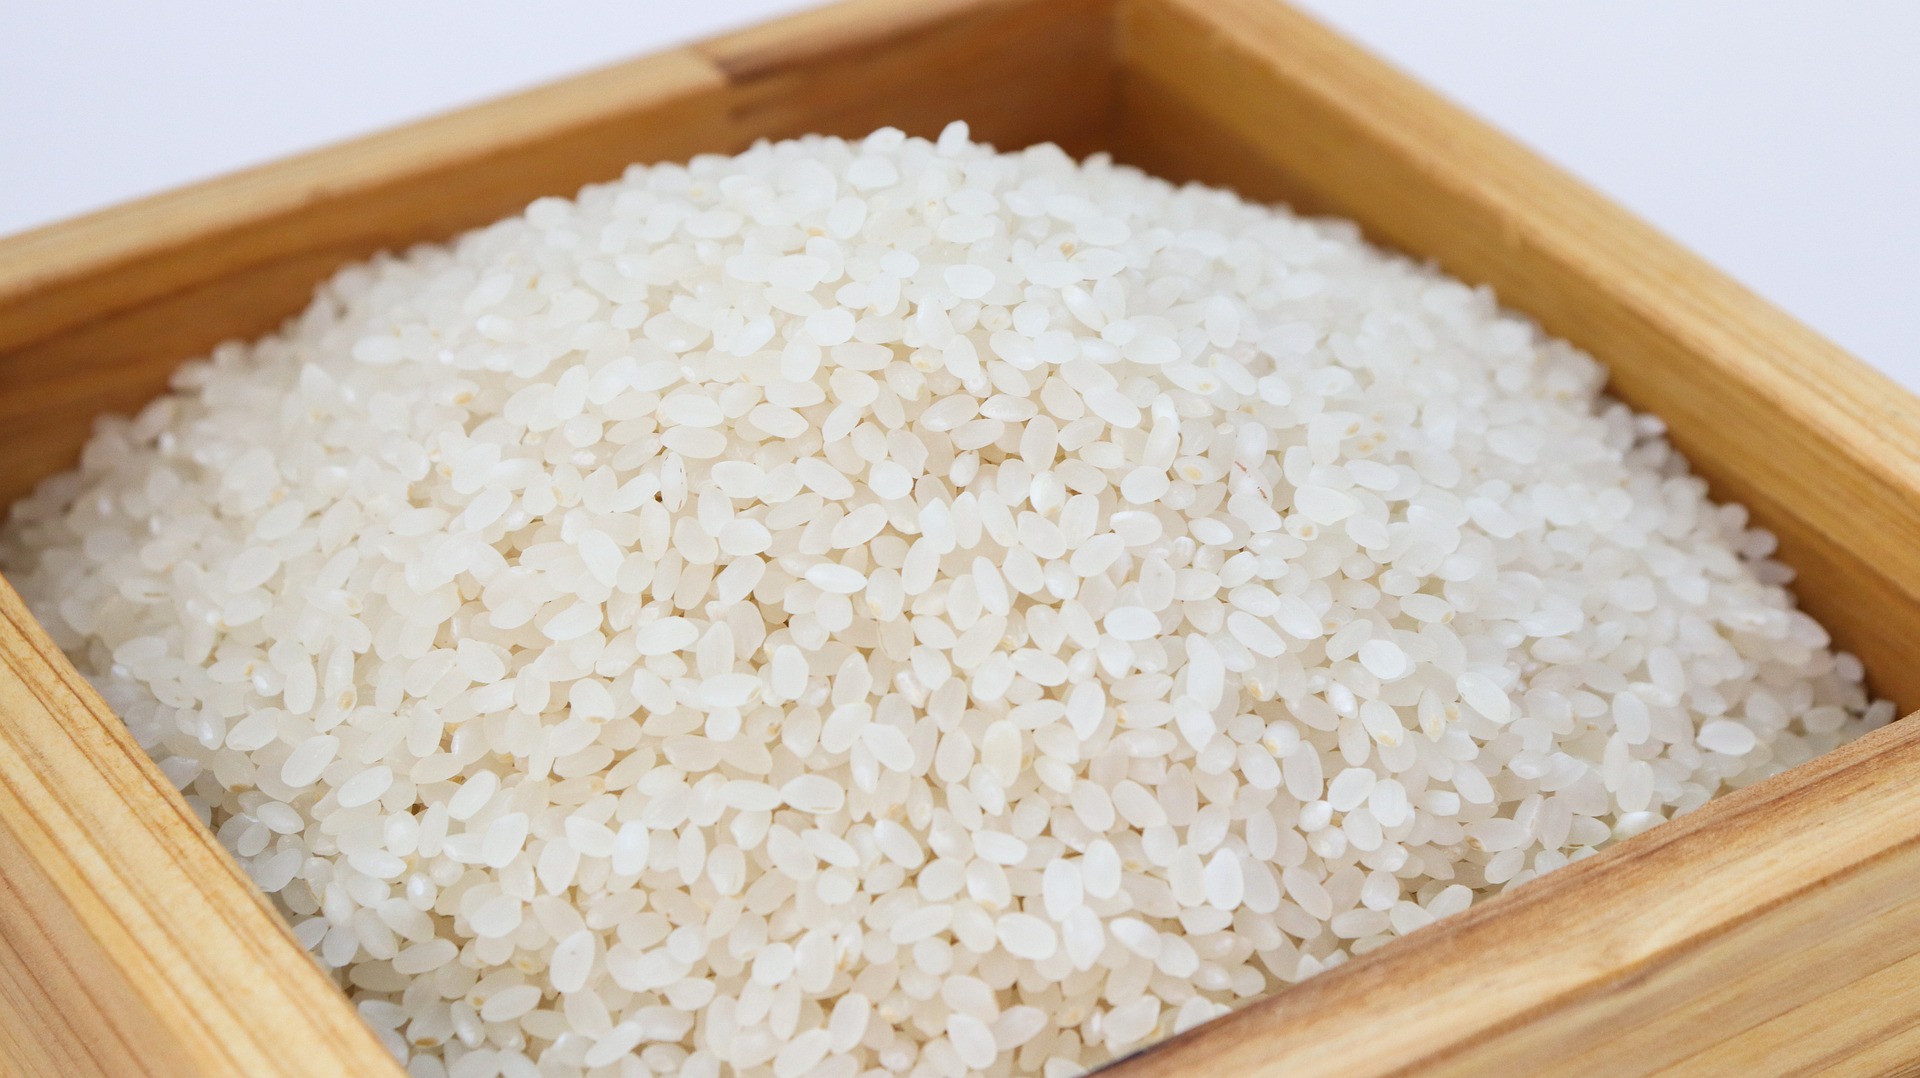 Boite contenant du riz